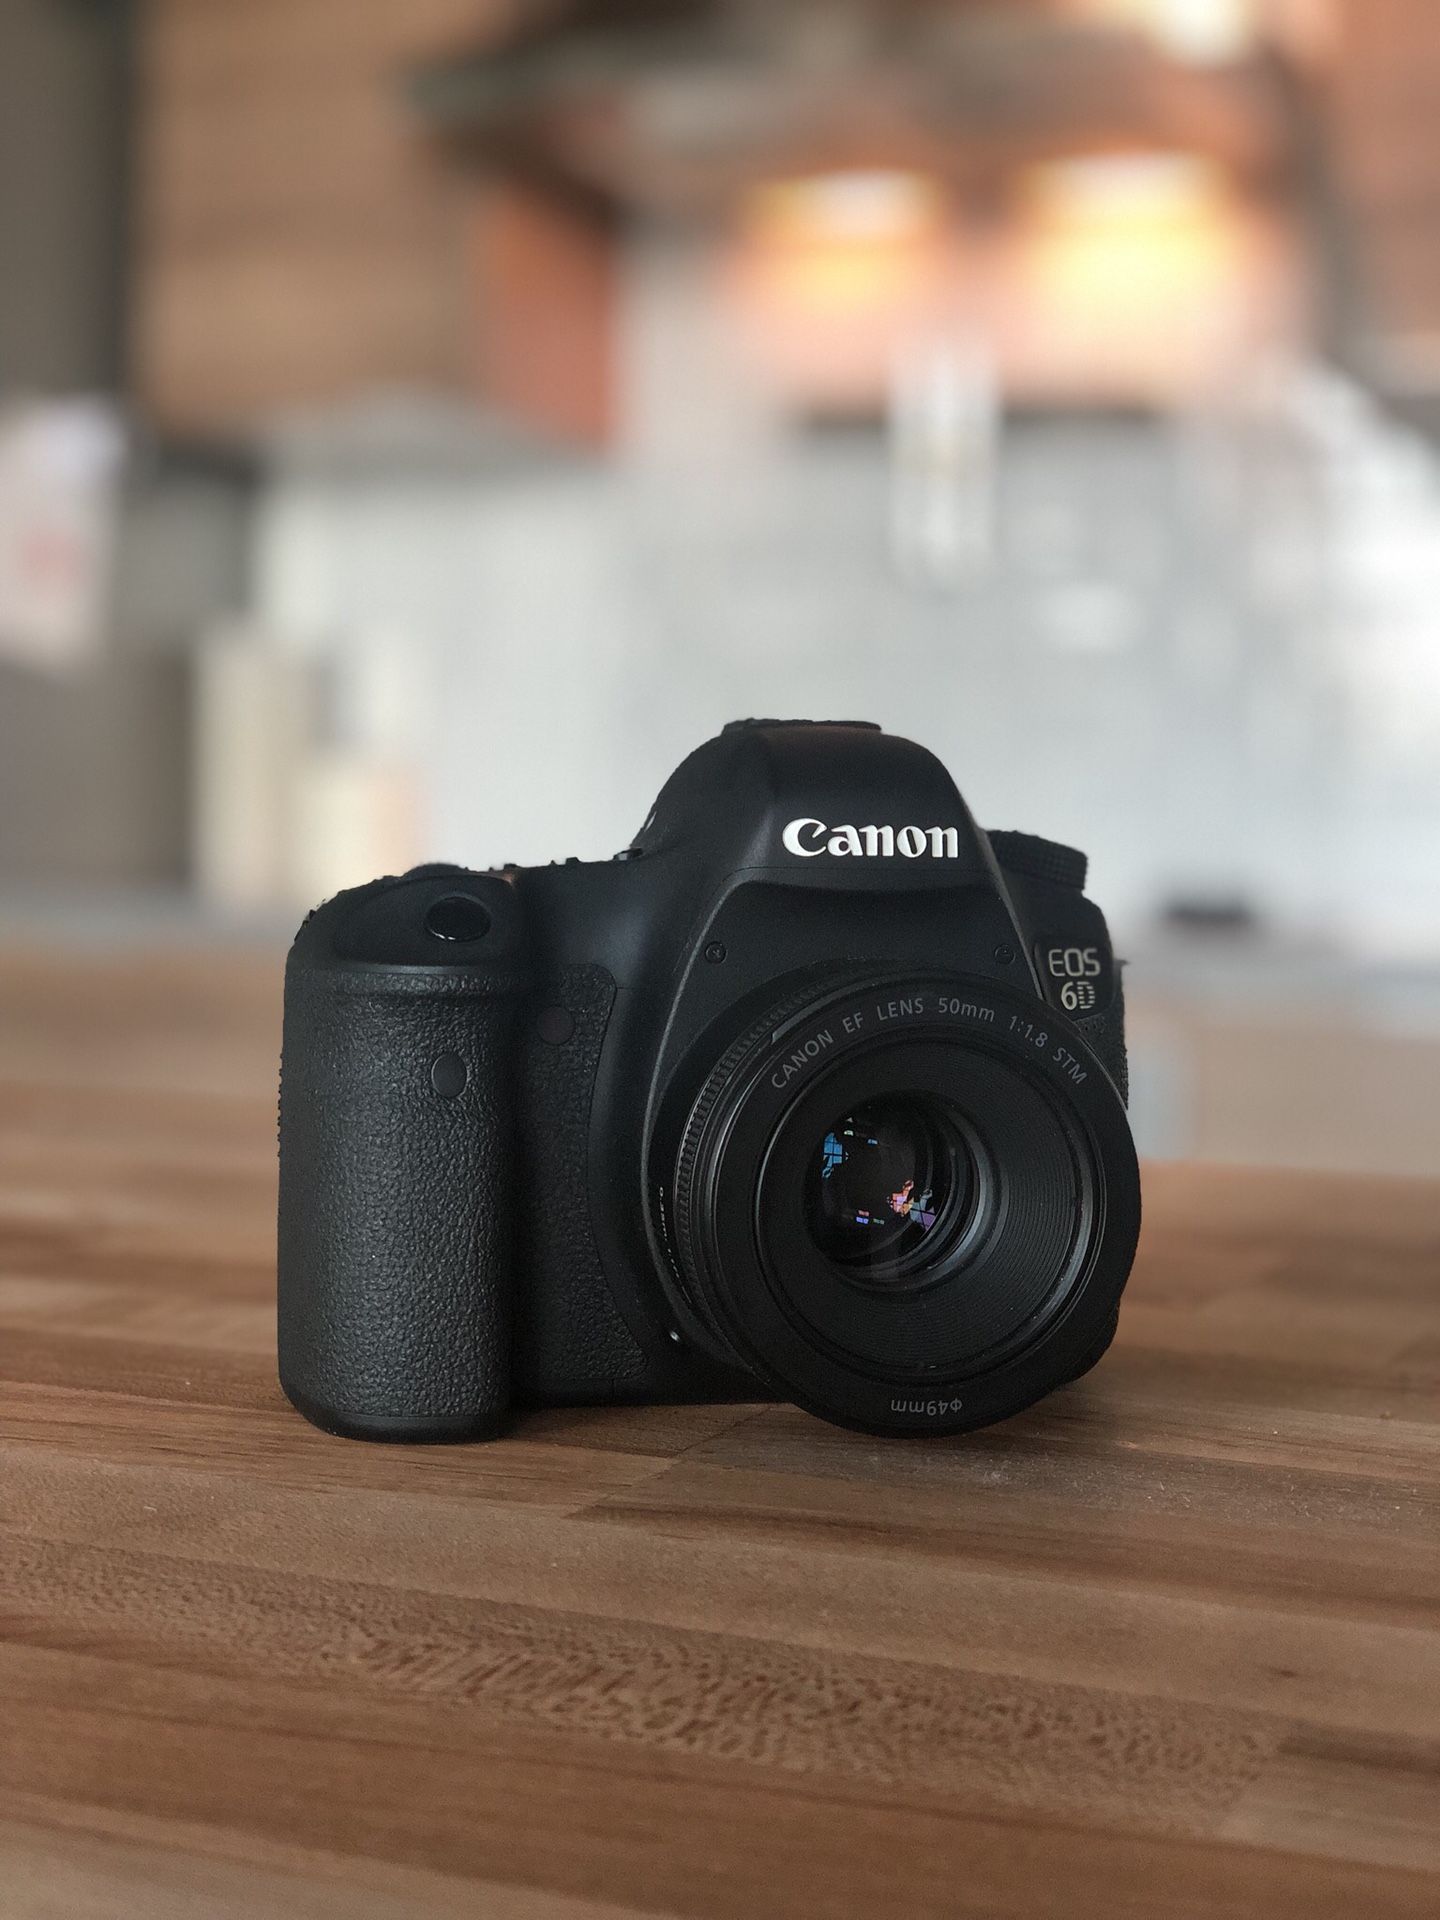 Canon 6D Full Frame DSLR Camera + Free 50mm Lens